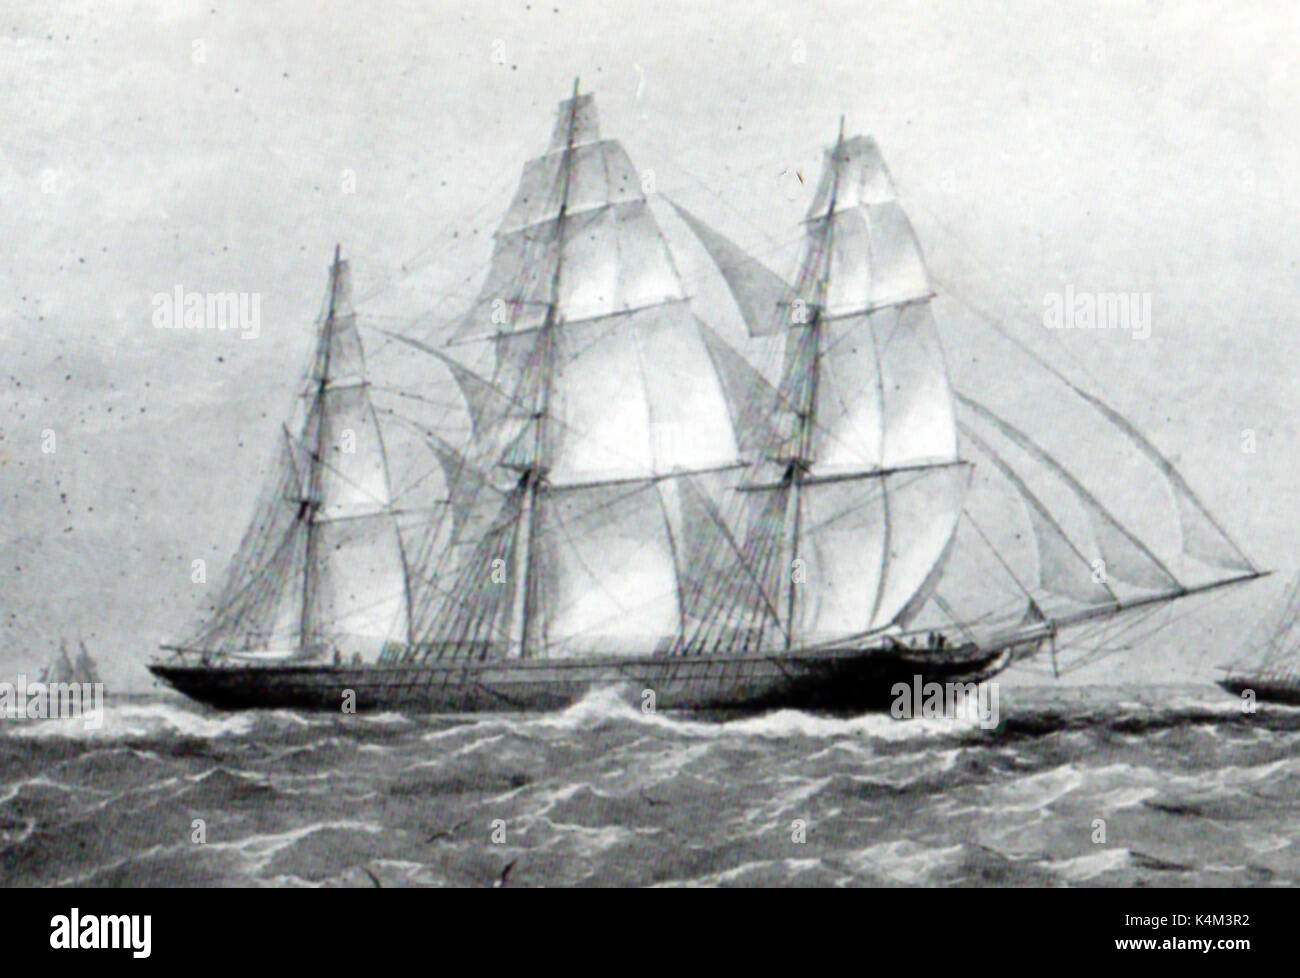 Il clipper ship (windjammer) ARIEL raffigurata nel 1866 quando si portava il tè. costruito da John Currier a Newburyport nel 1846 per N.L. & G. Griswold - tenutasi il cantone a New York record di novanta giorni. Foto Stock